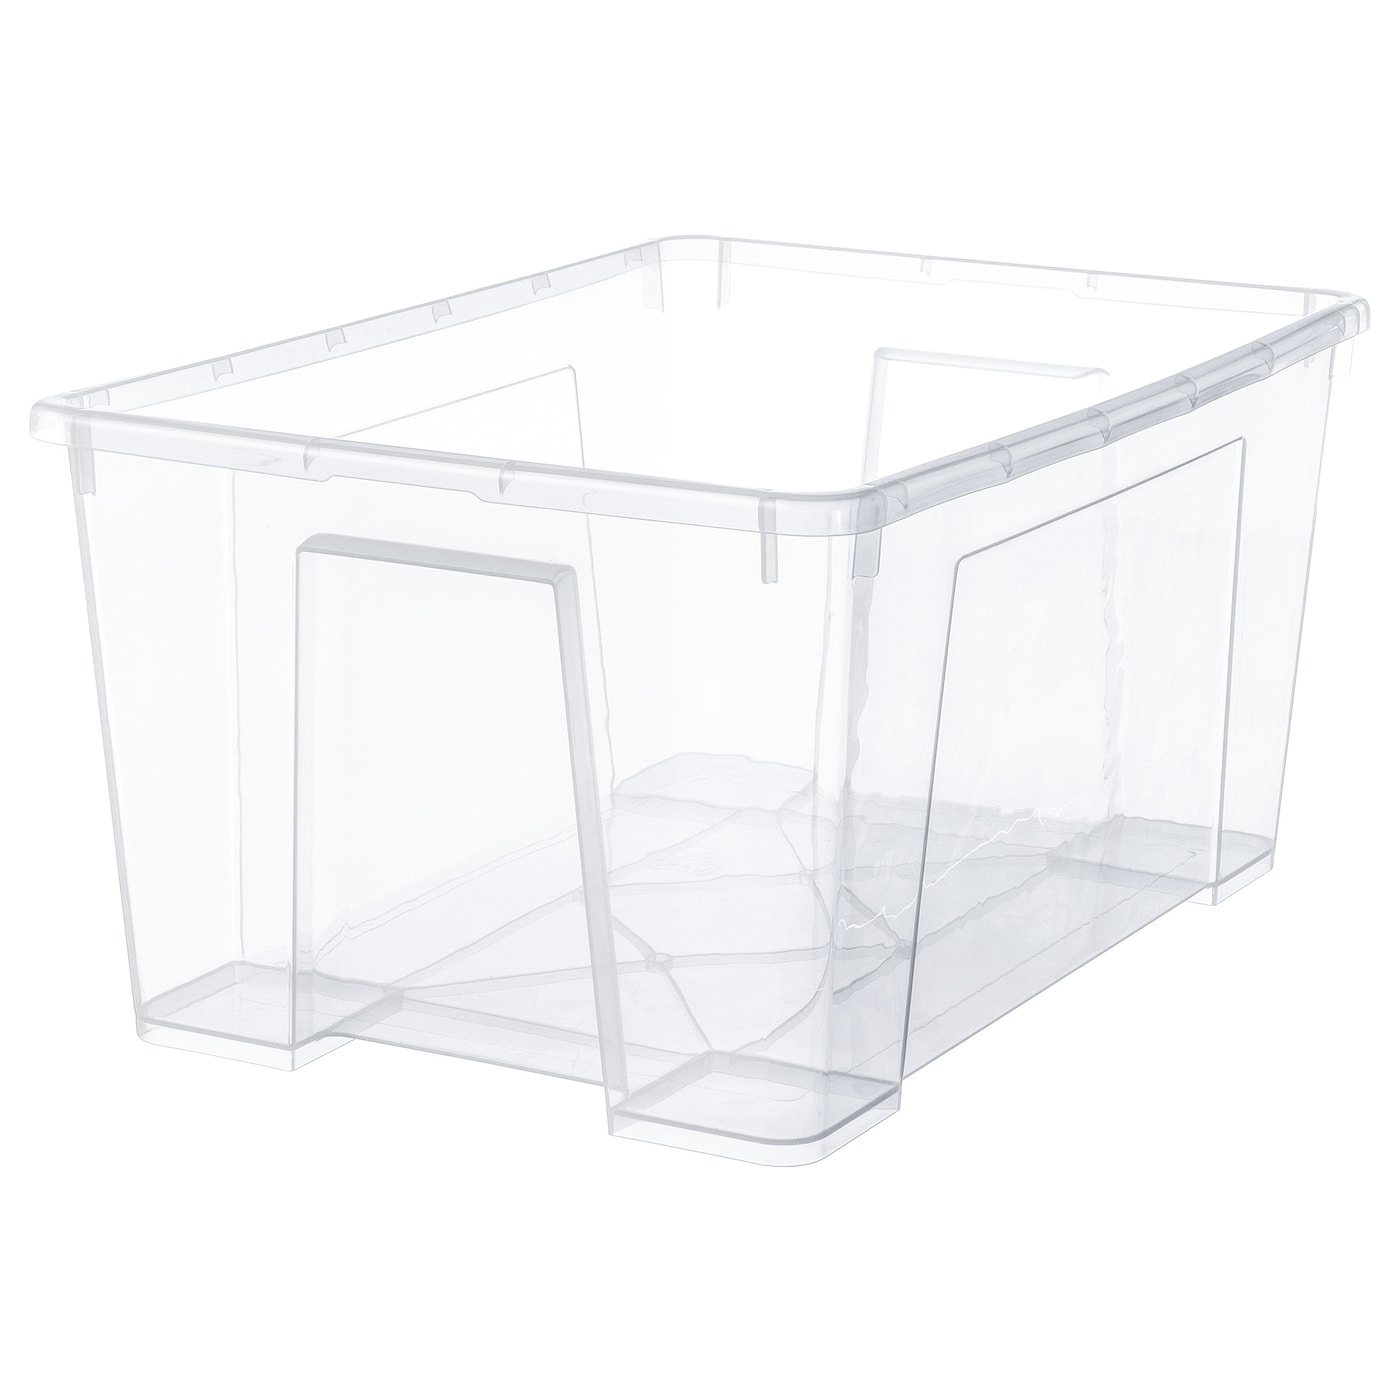 SAMLA САМЛА Контейнер, прозрачный, 56x39x28 см/45 л IKEA контейнер для вещей с крышкой икеа самла samla 39x28x14 см 11 л прозрачный 39389132